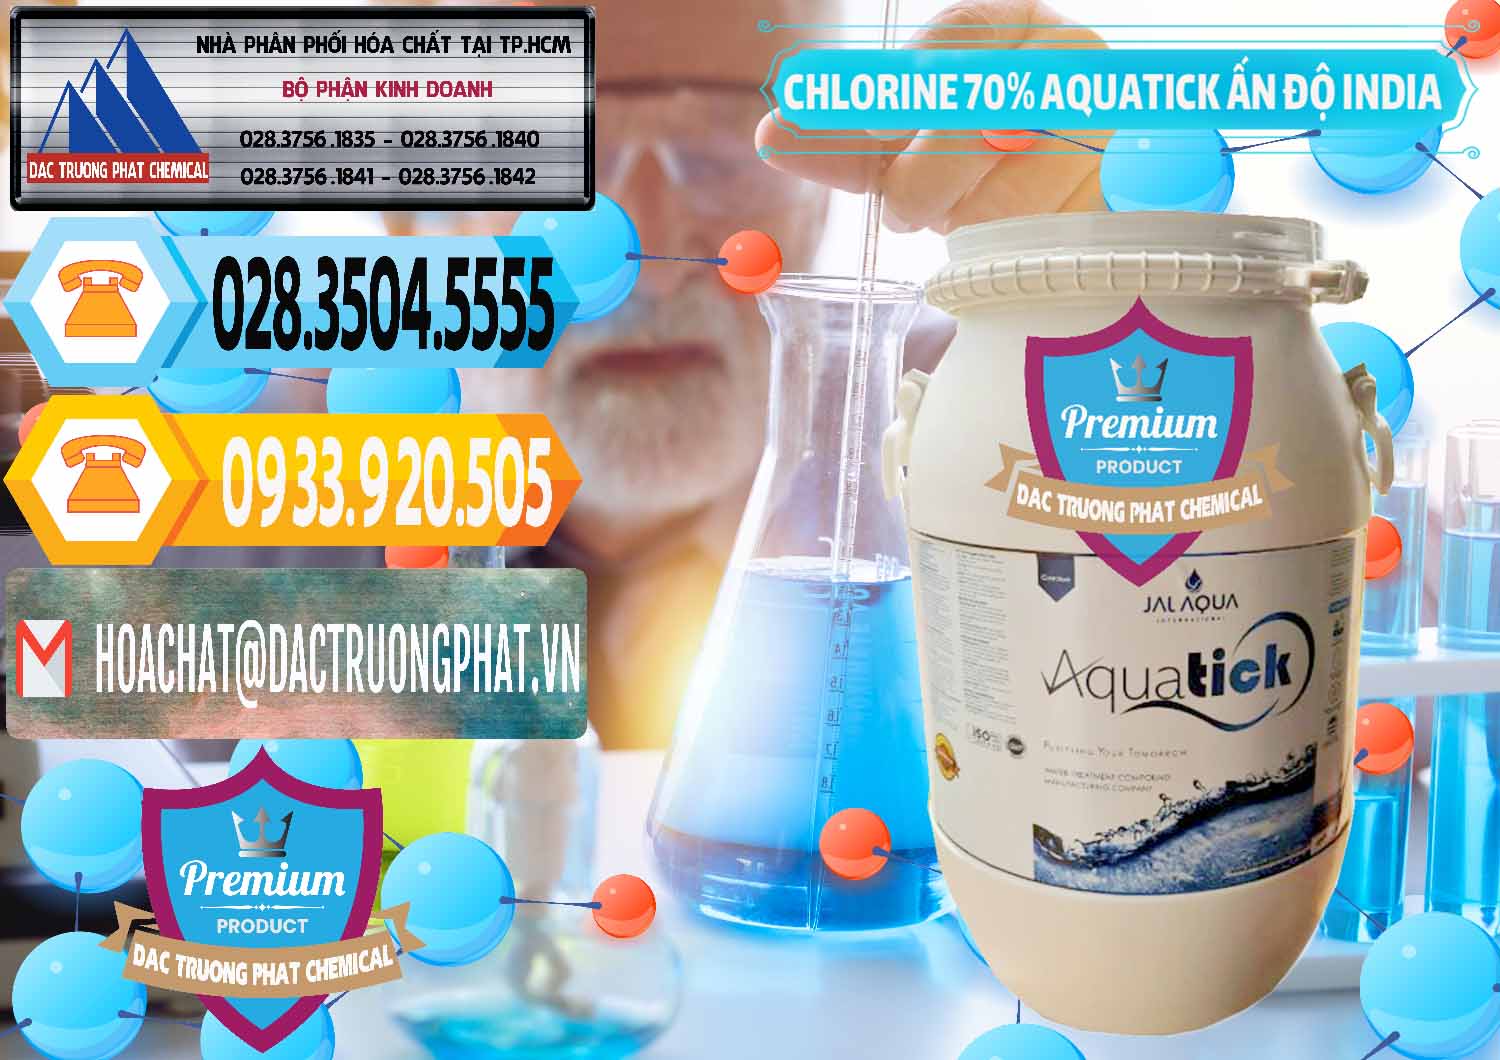 Nơi bán Chlorine – Clorin 70% Aquatick Jal Aqua Ấn Độ India - 0215 - Cung cấp ( phân phối ) hóa chất tại TP.HCM - hoachattayrua.net